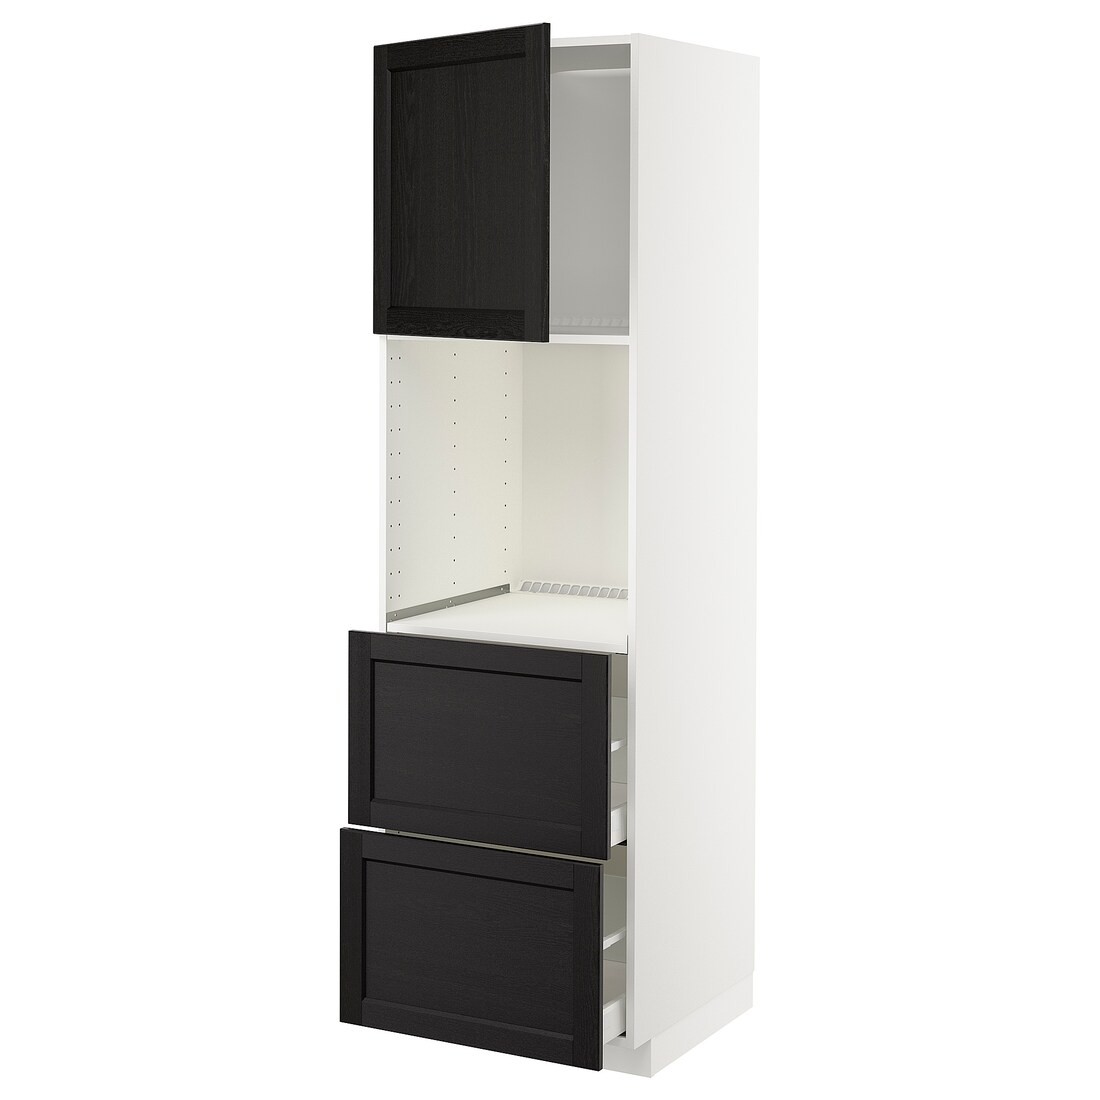 IKEA METOD МЕТОД / MAXIMERA МАКСИМЕРА Высокий шкаф для духовки с дверцей / ящиками, белый / Lerhyttan черная морилка, 60x60x200 см 79456025 | 794.560.25